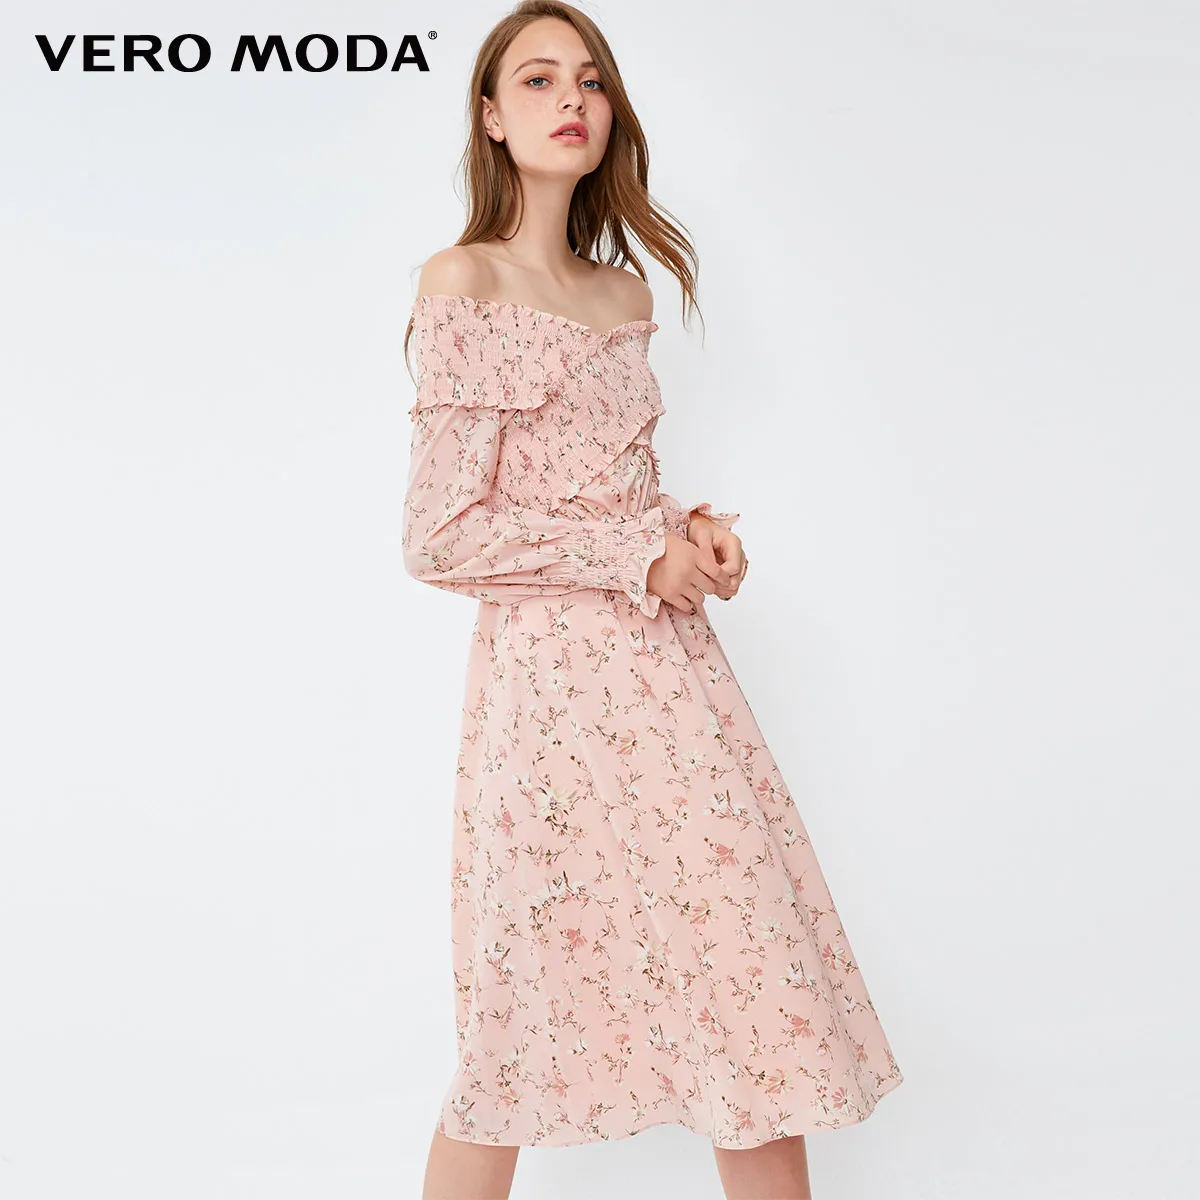 Vero Moda Грудь Эластичный крест-над дизайн Цветочное платье рукав платье | 31837D503 - Цвет: Rose smoke